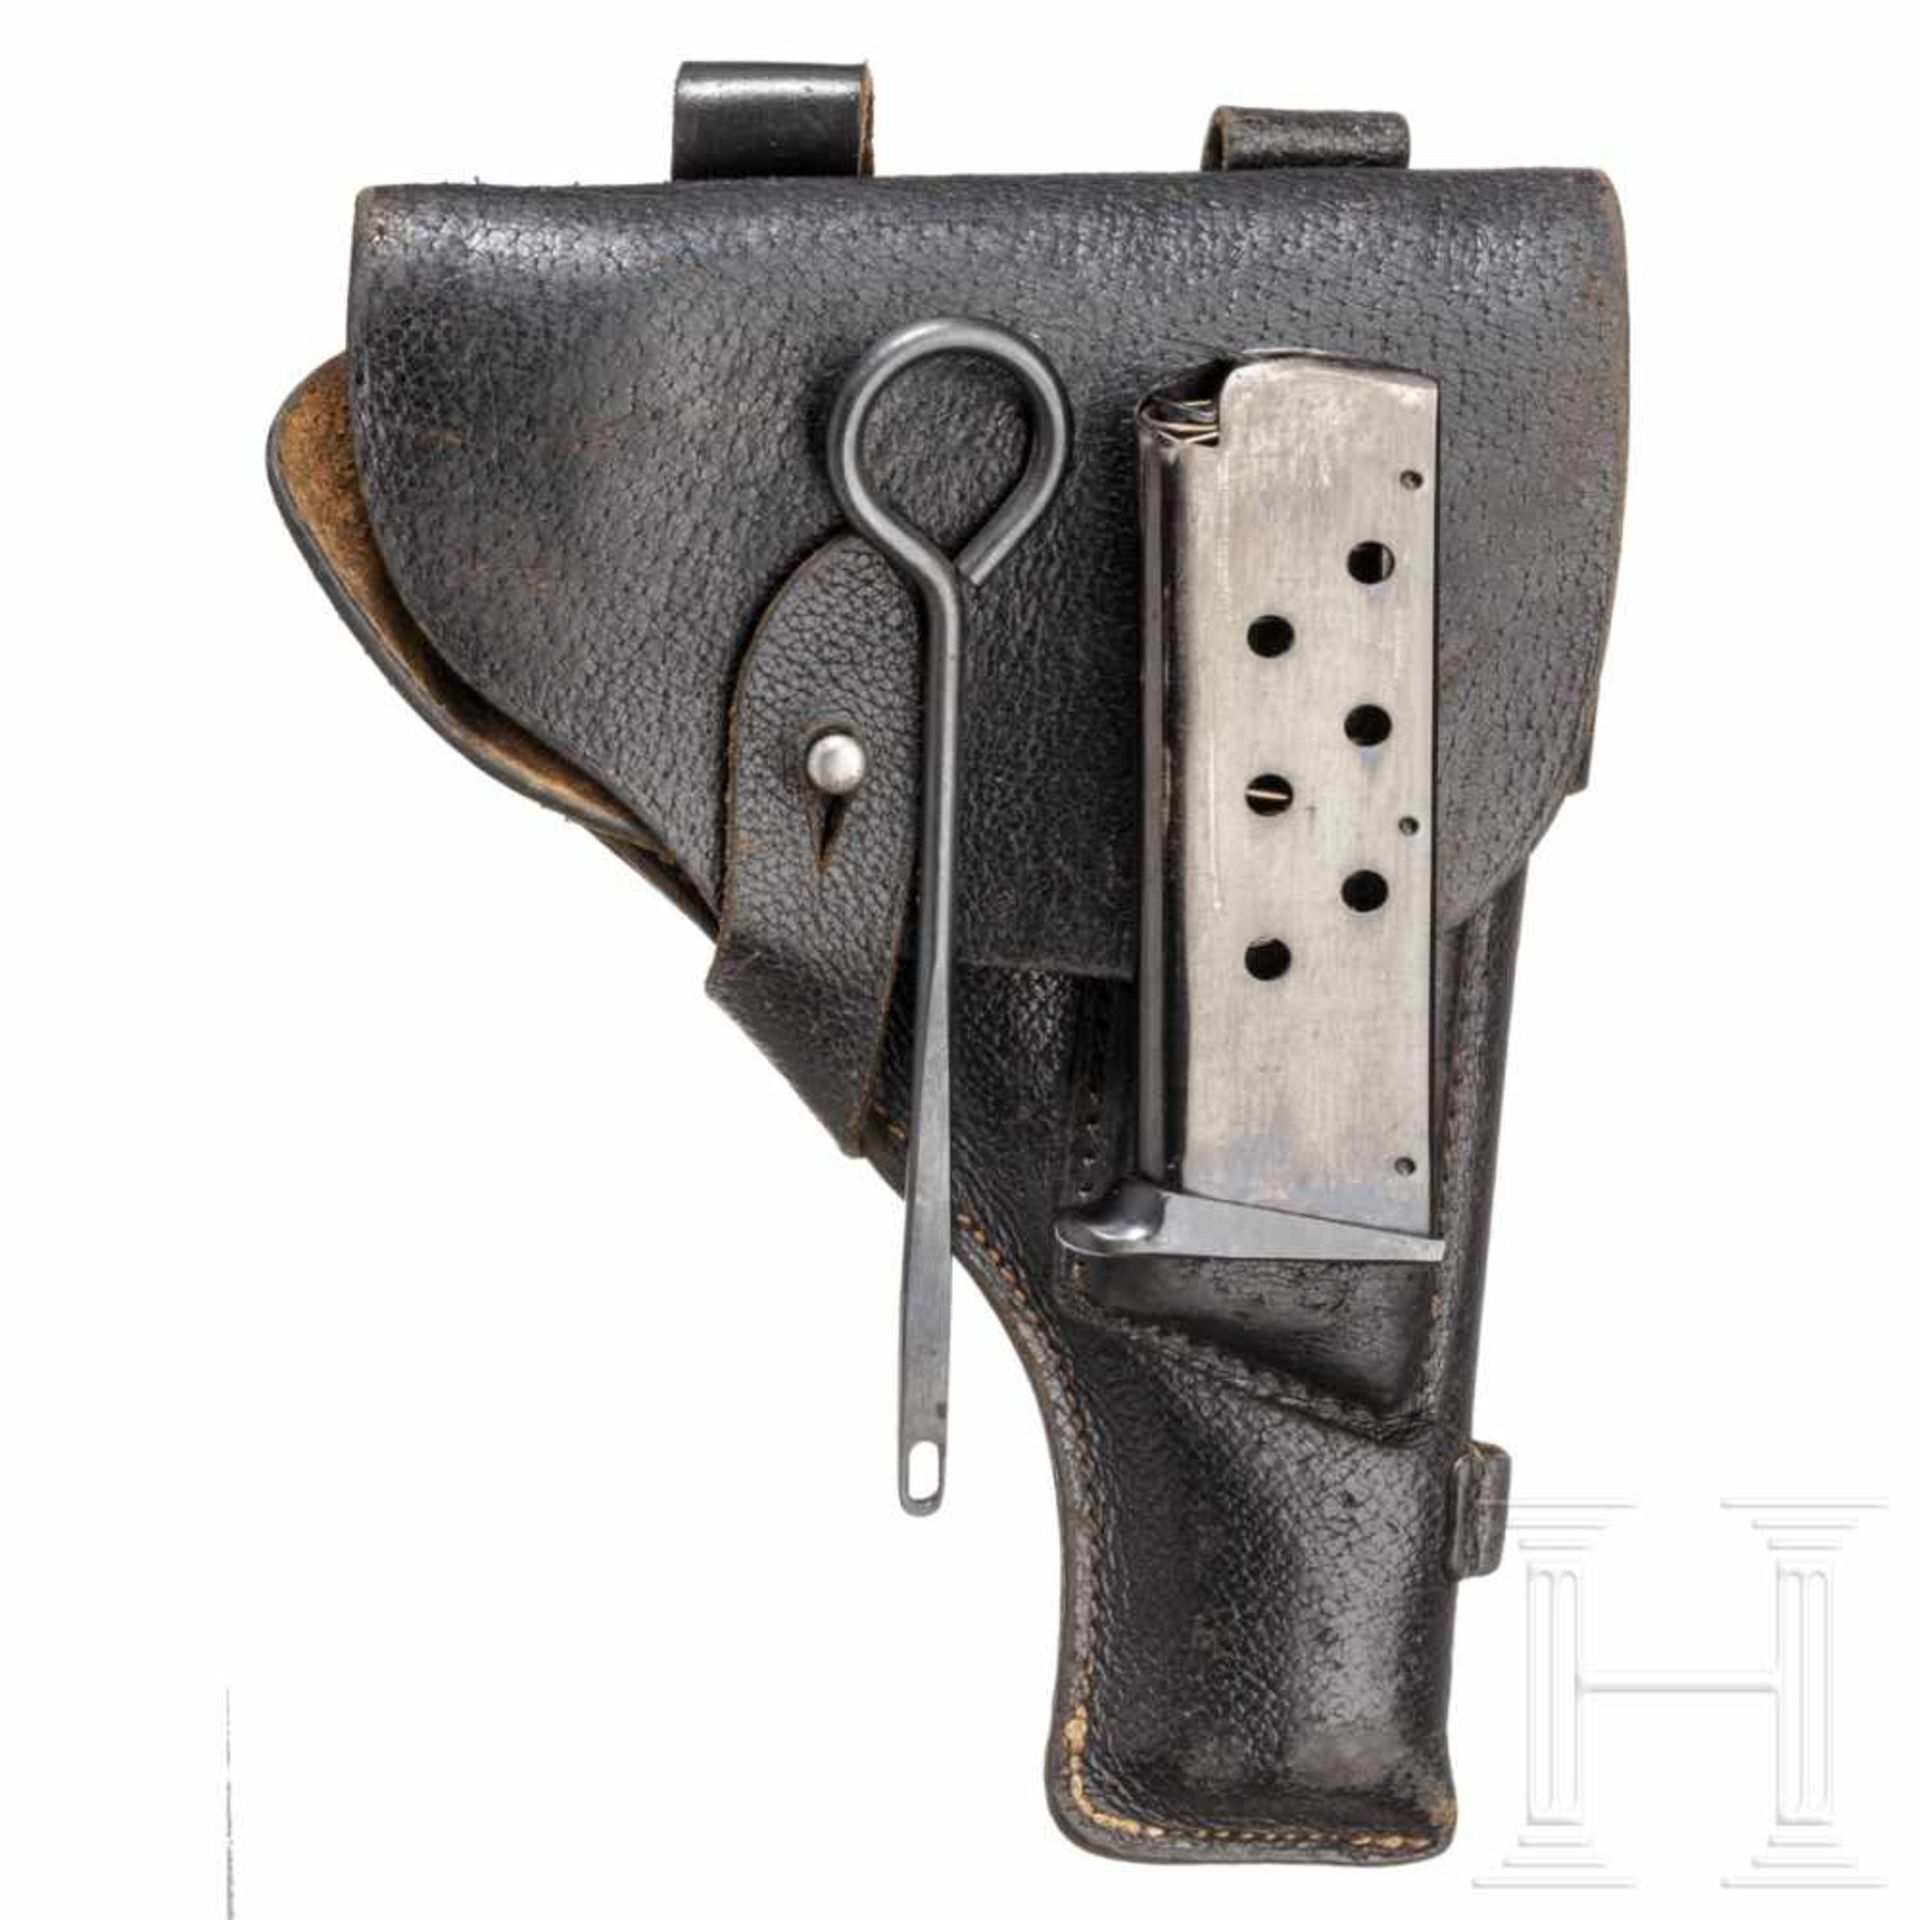 Ägypten - Tokagypt Mod. 58, mit Tasche, PolizeiKal. 9 mm Luger, Nr. E 12702, Blanker Lauf, Länge 115 - Bild 3 aus 4